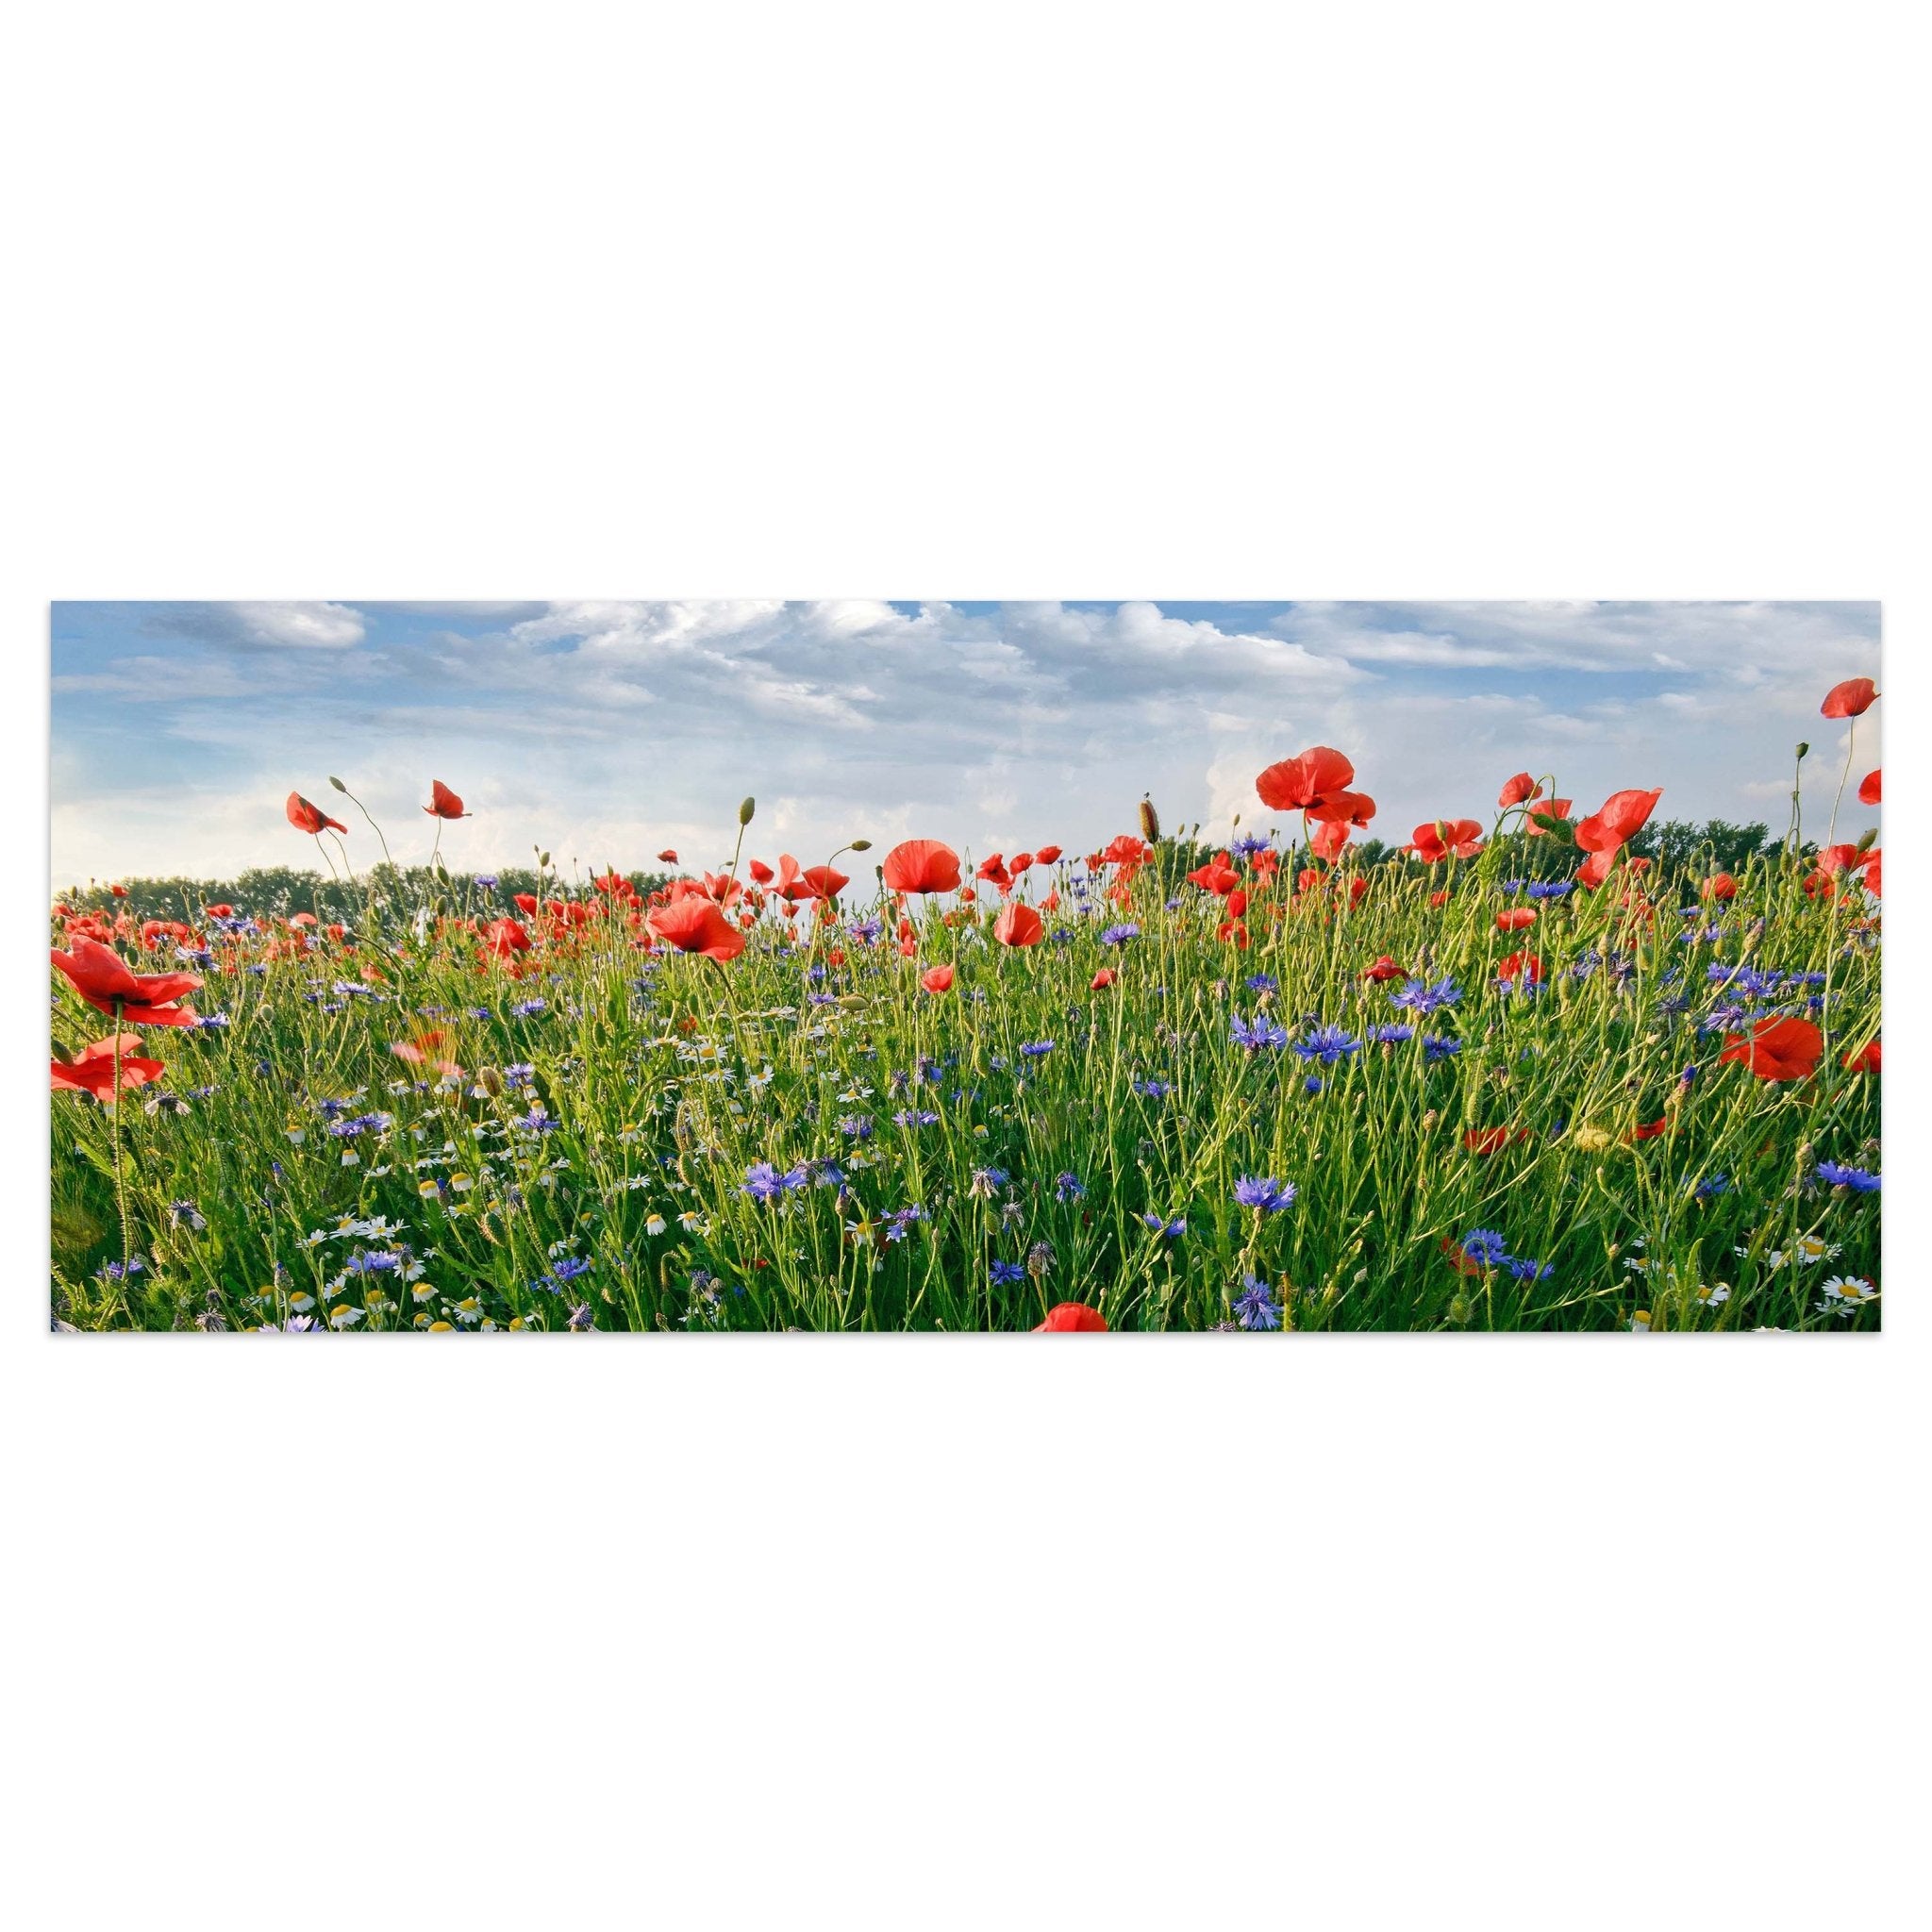 Leinwandbild Blumenwiese M0493 kaufen - Bild 1